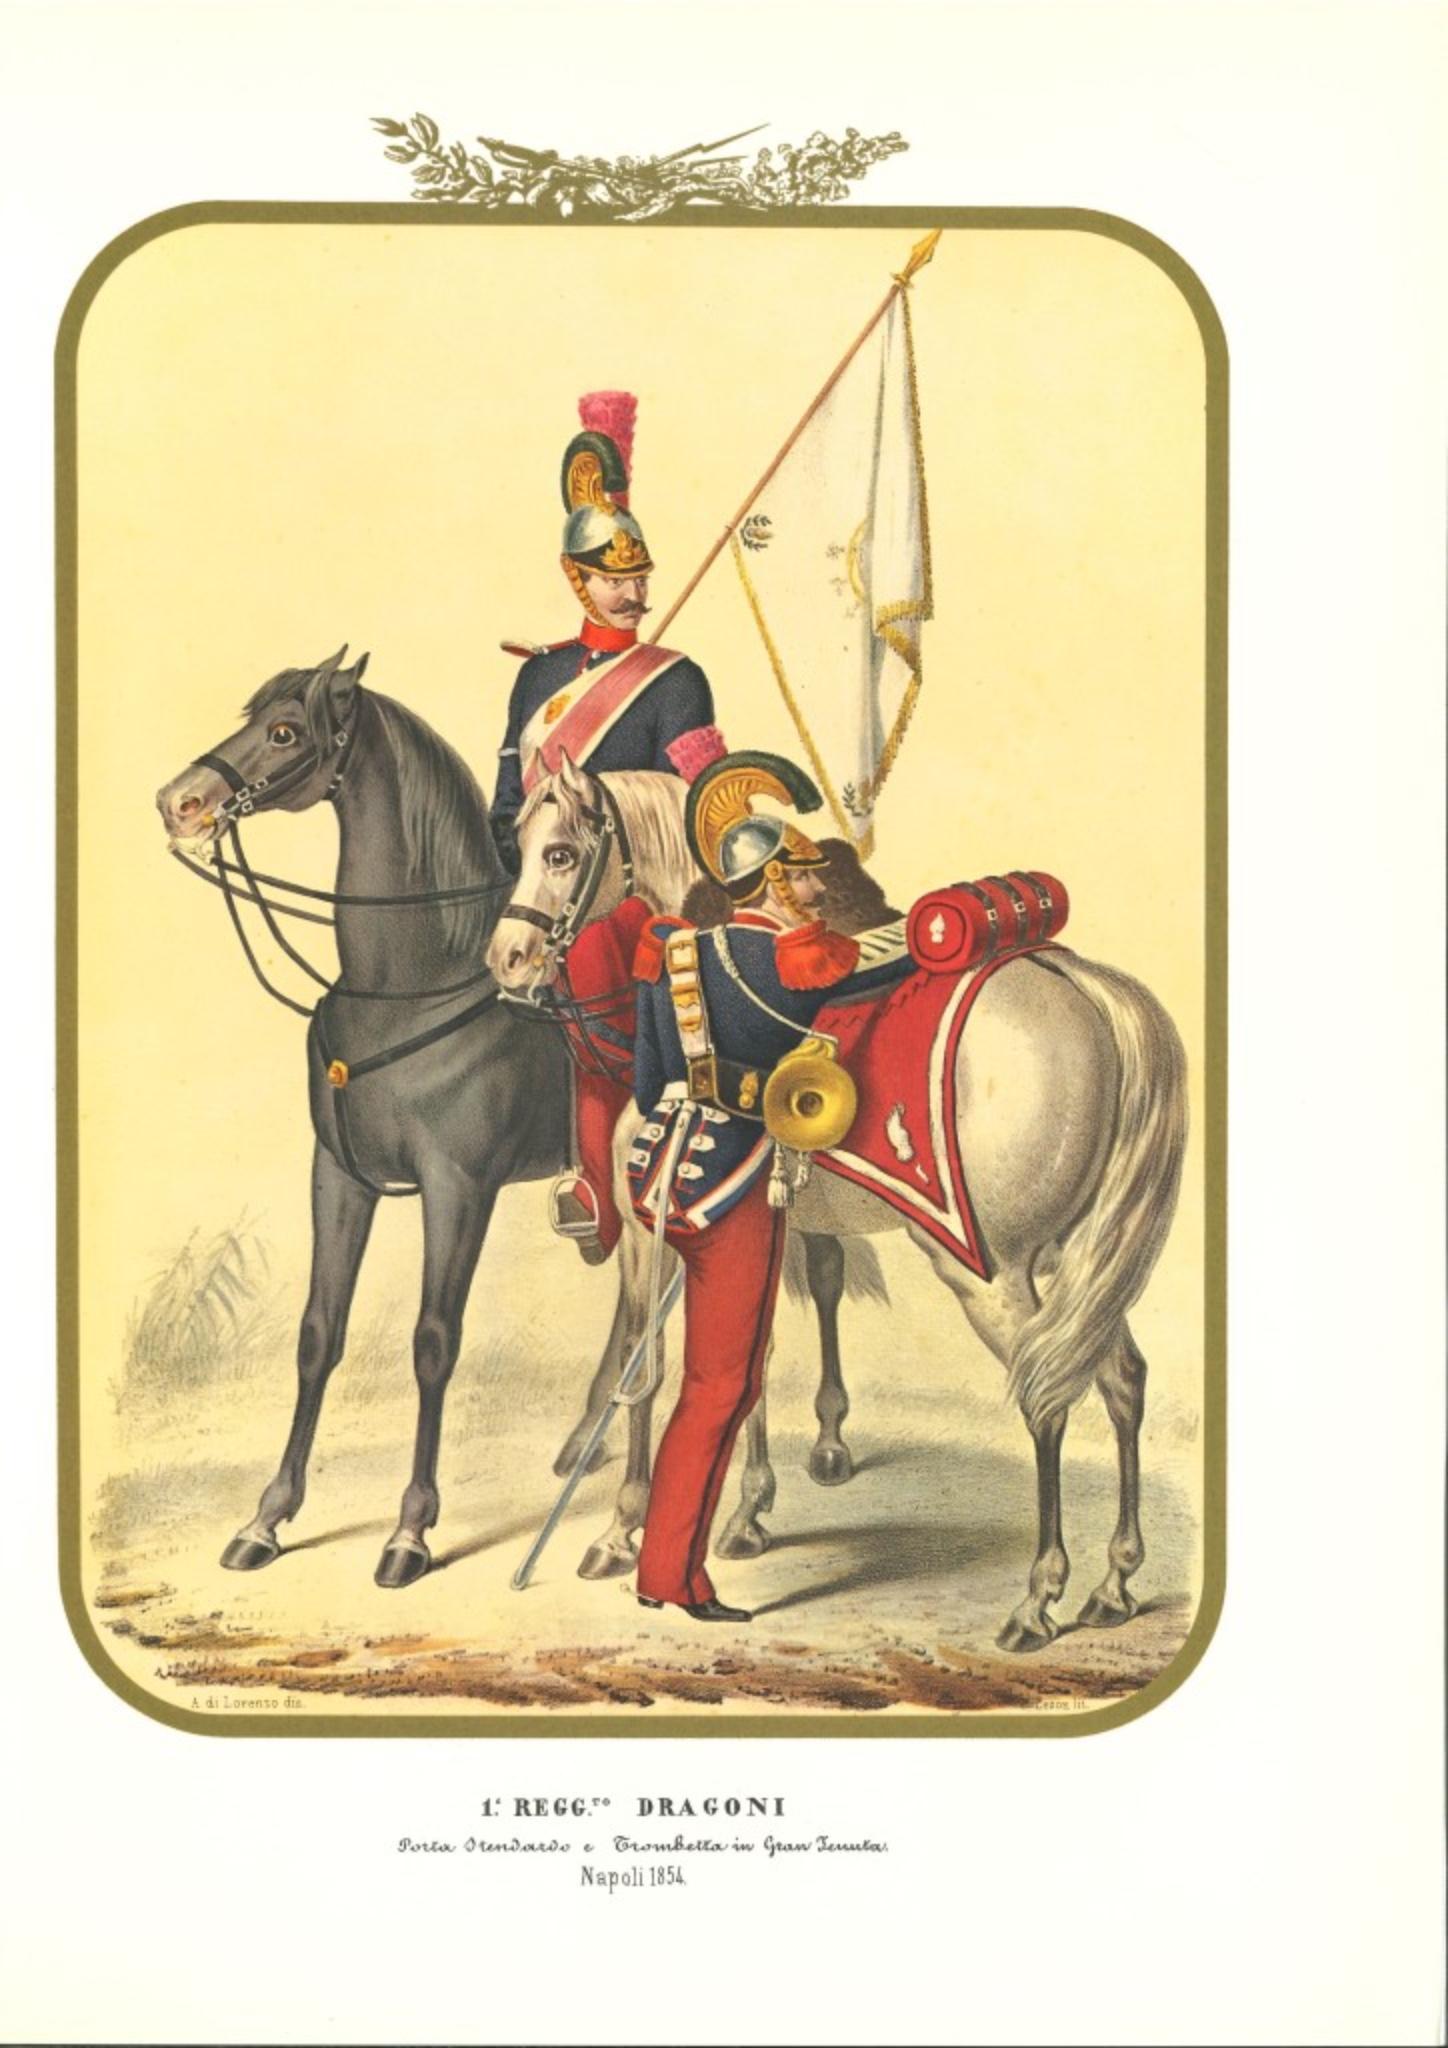 I Dragons Regiment ist eine Lithographie von Antonio Zezon. Neapel 1854.

Interessante kolorierte Lithographie, die zwei Mitglieder des Dragonerregiments auf ihrem Pferd zeigt: Ein Standartenträger und ein Trompeter in Ausgehuniform.

In